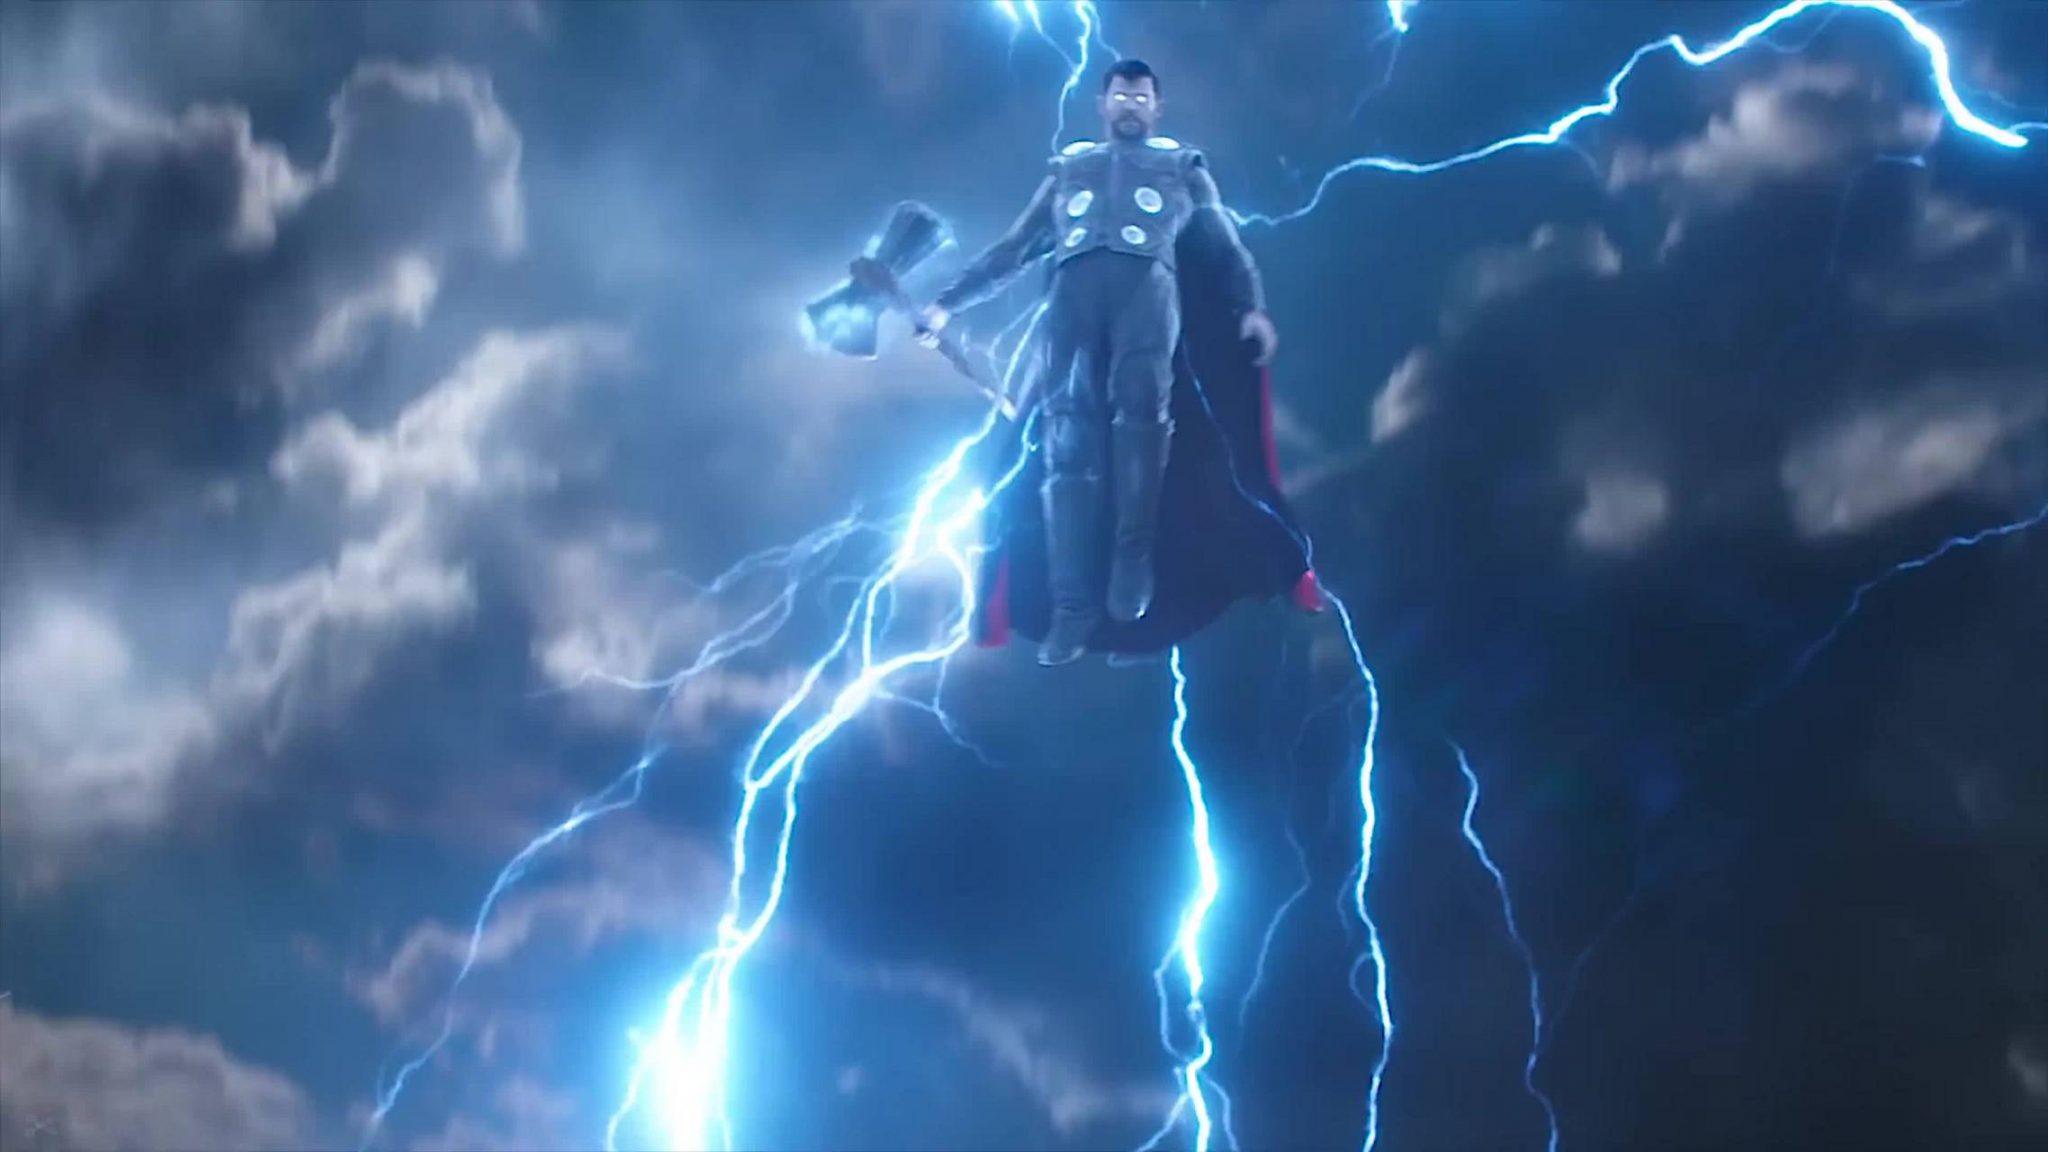 Thor arrives in Wakanda